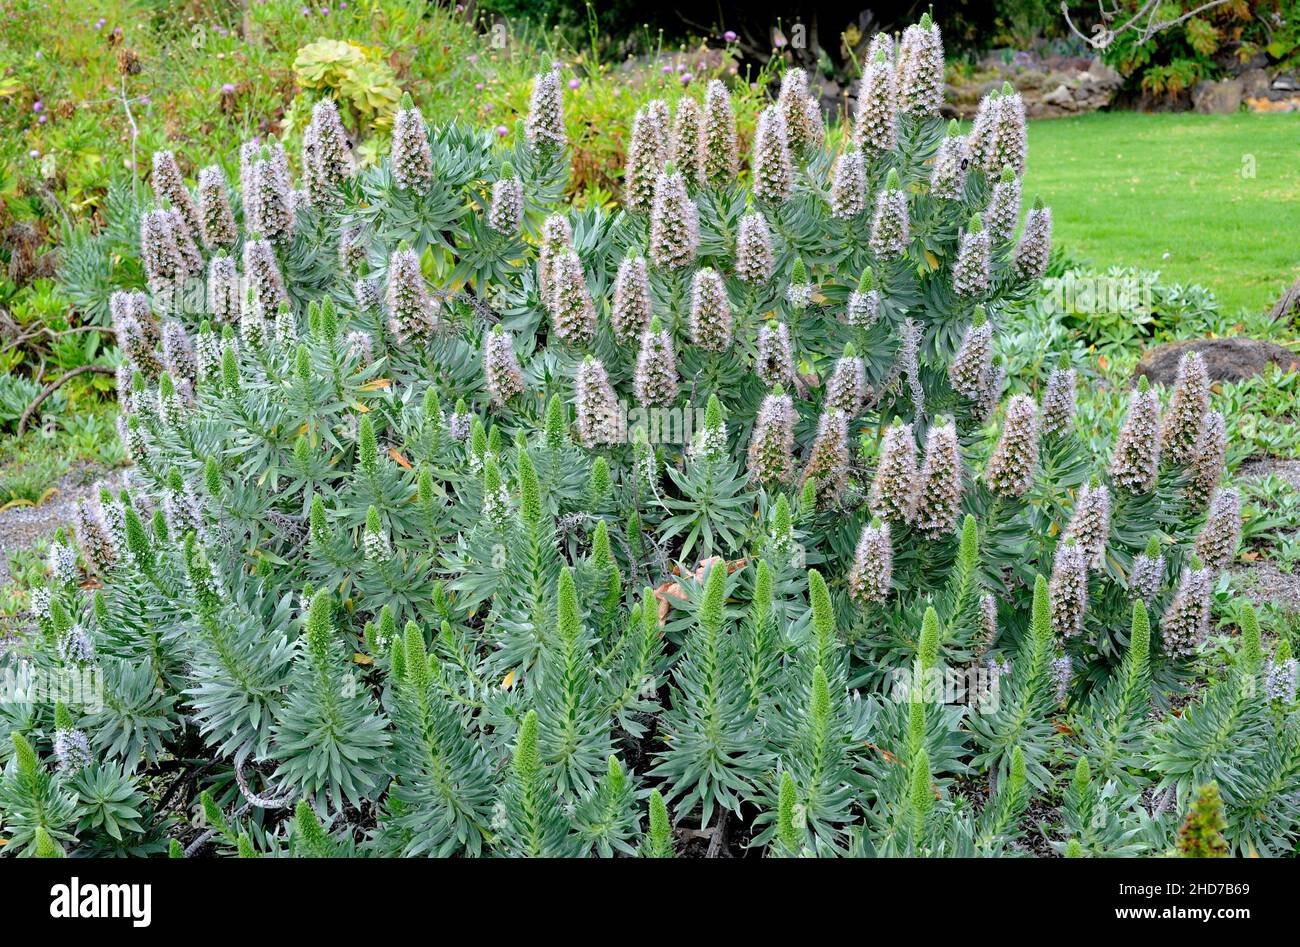 Taginaste de El Hierro (Echium hierrense) is a shrub endemic to El Hierro, Canary Islands, Spain. Stock Photo